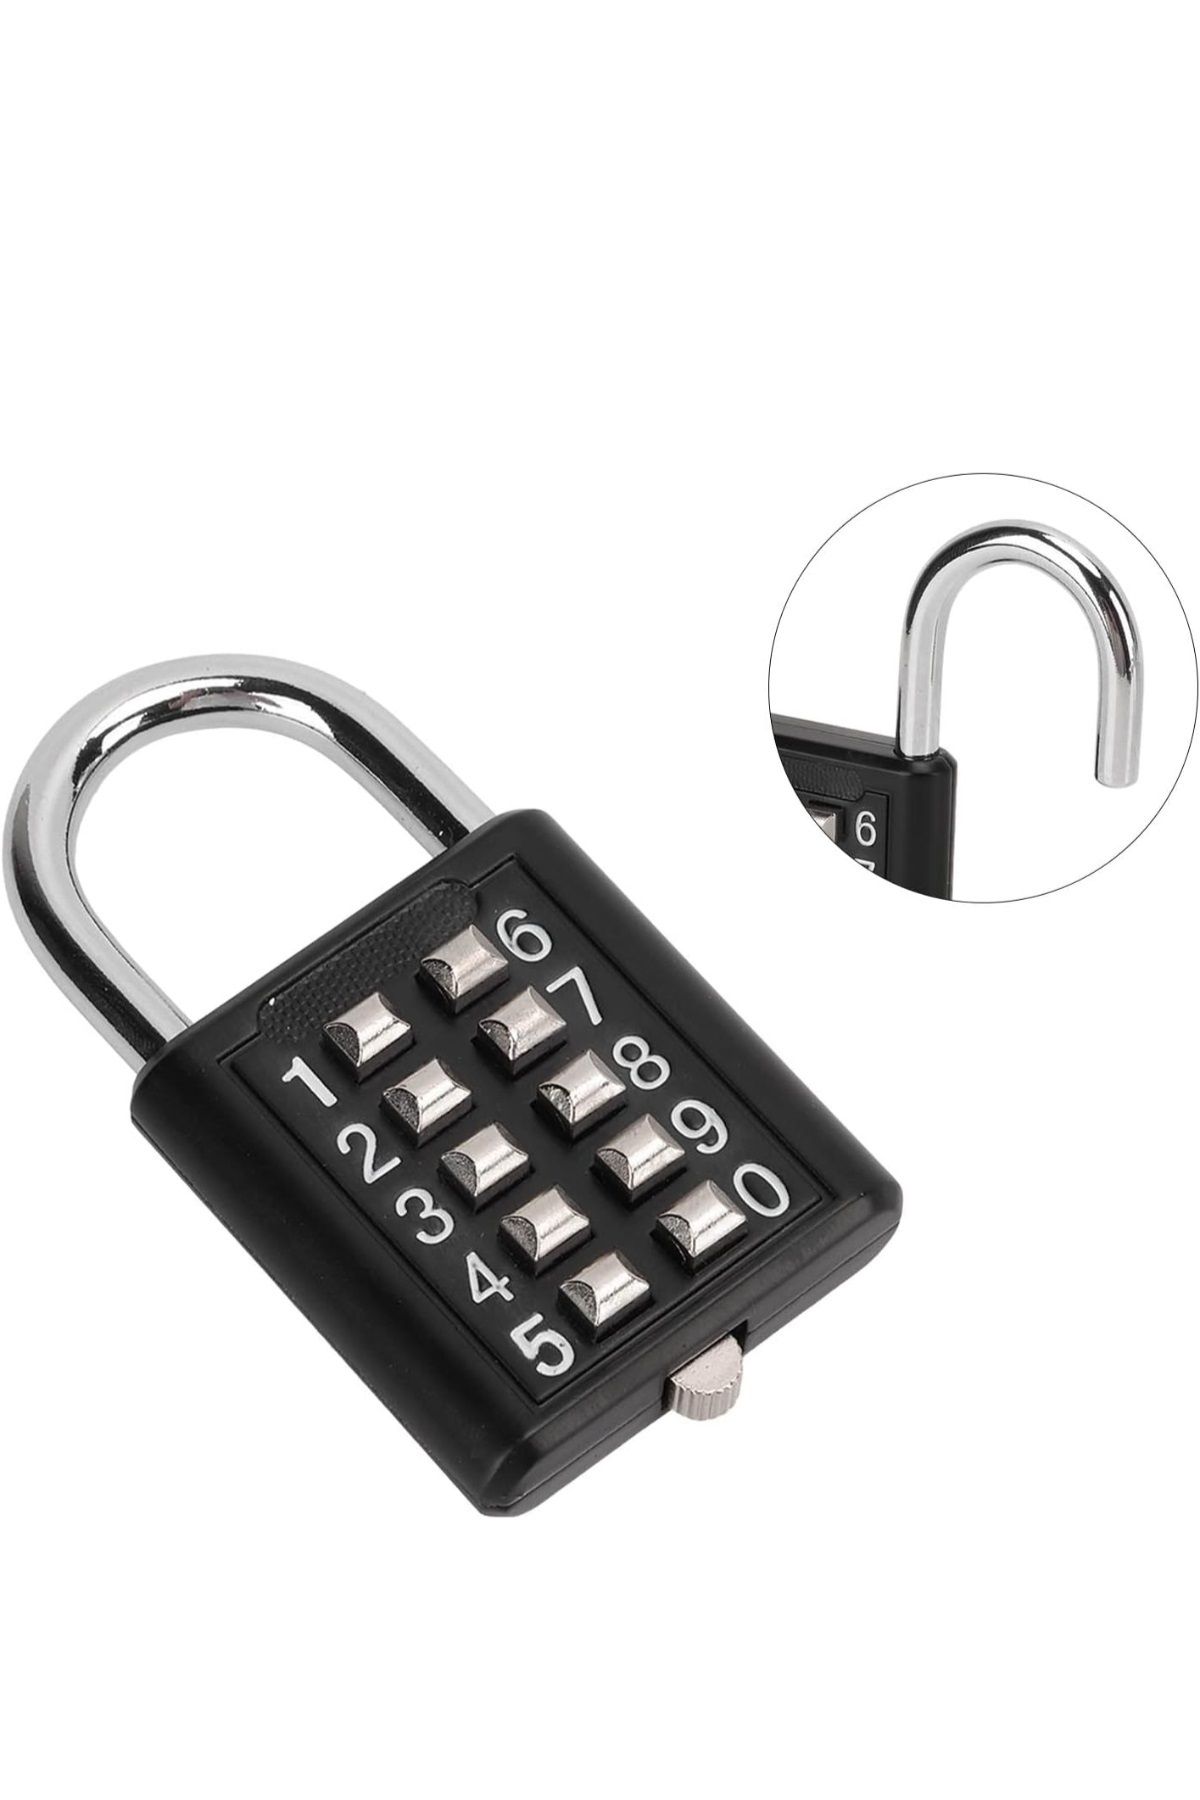 Dahaus 10 Şifreli Akıllı Kilit Basmalı Şifreli Kilit Ofis Dolap Bagaj Valiz Çanta Güvenlik Kilit XLK413